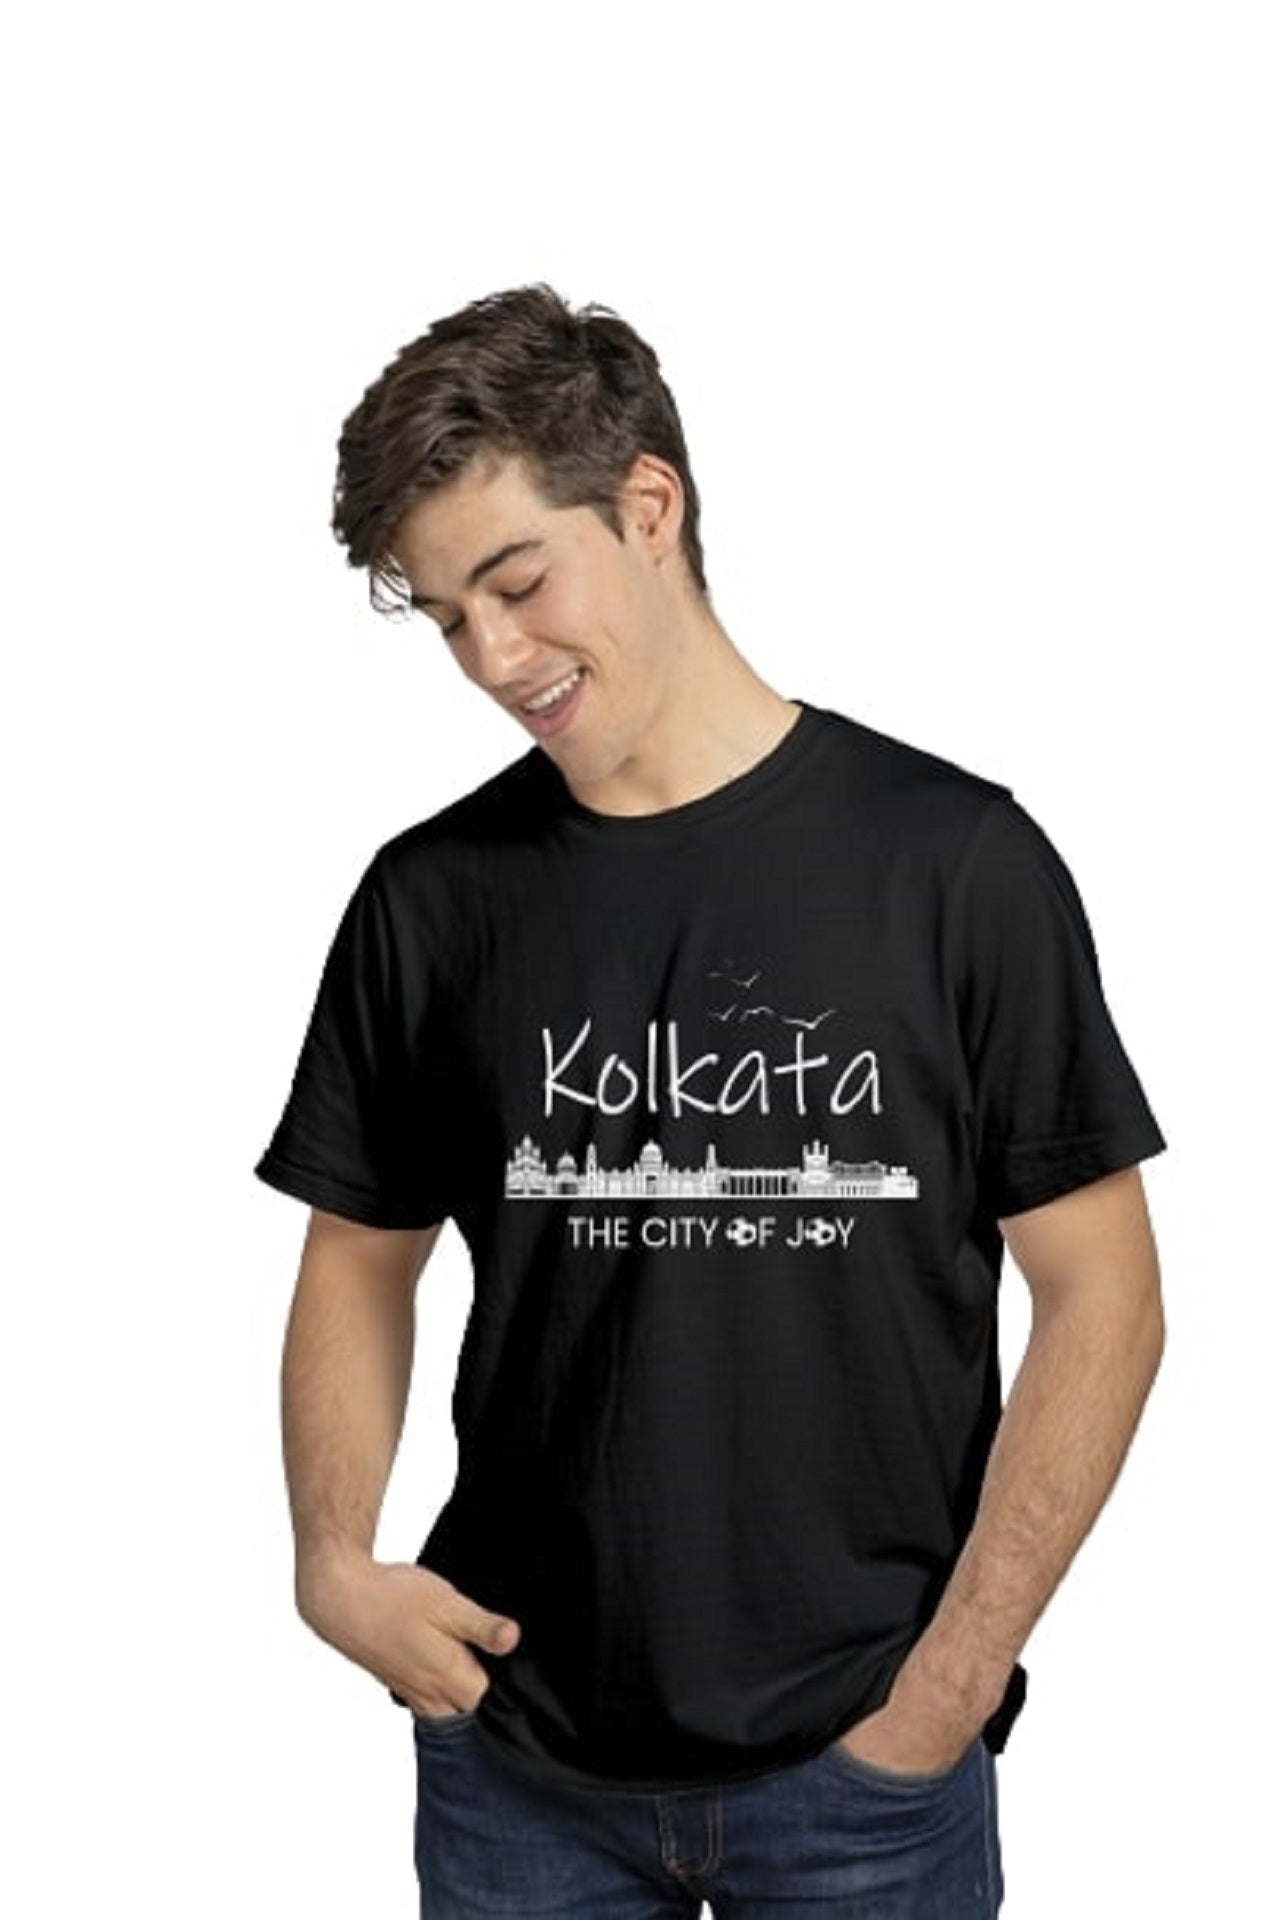 Simple Bengali Printed t-shirt for men